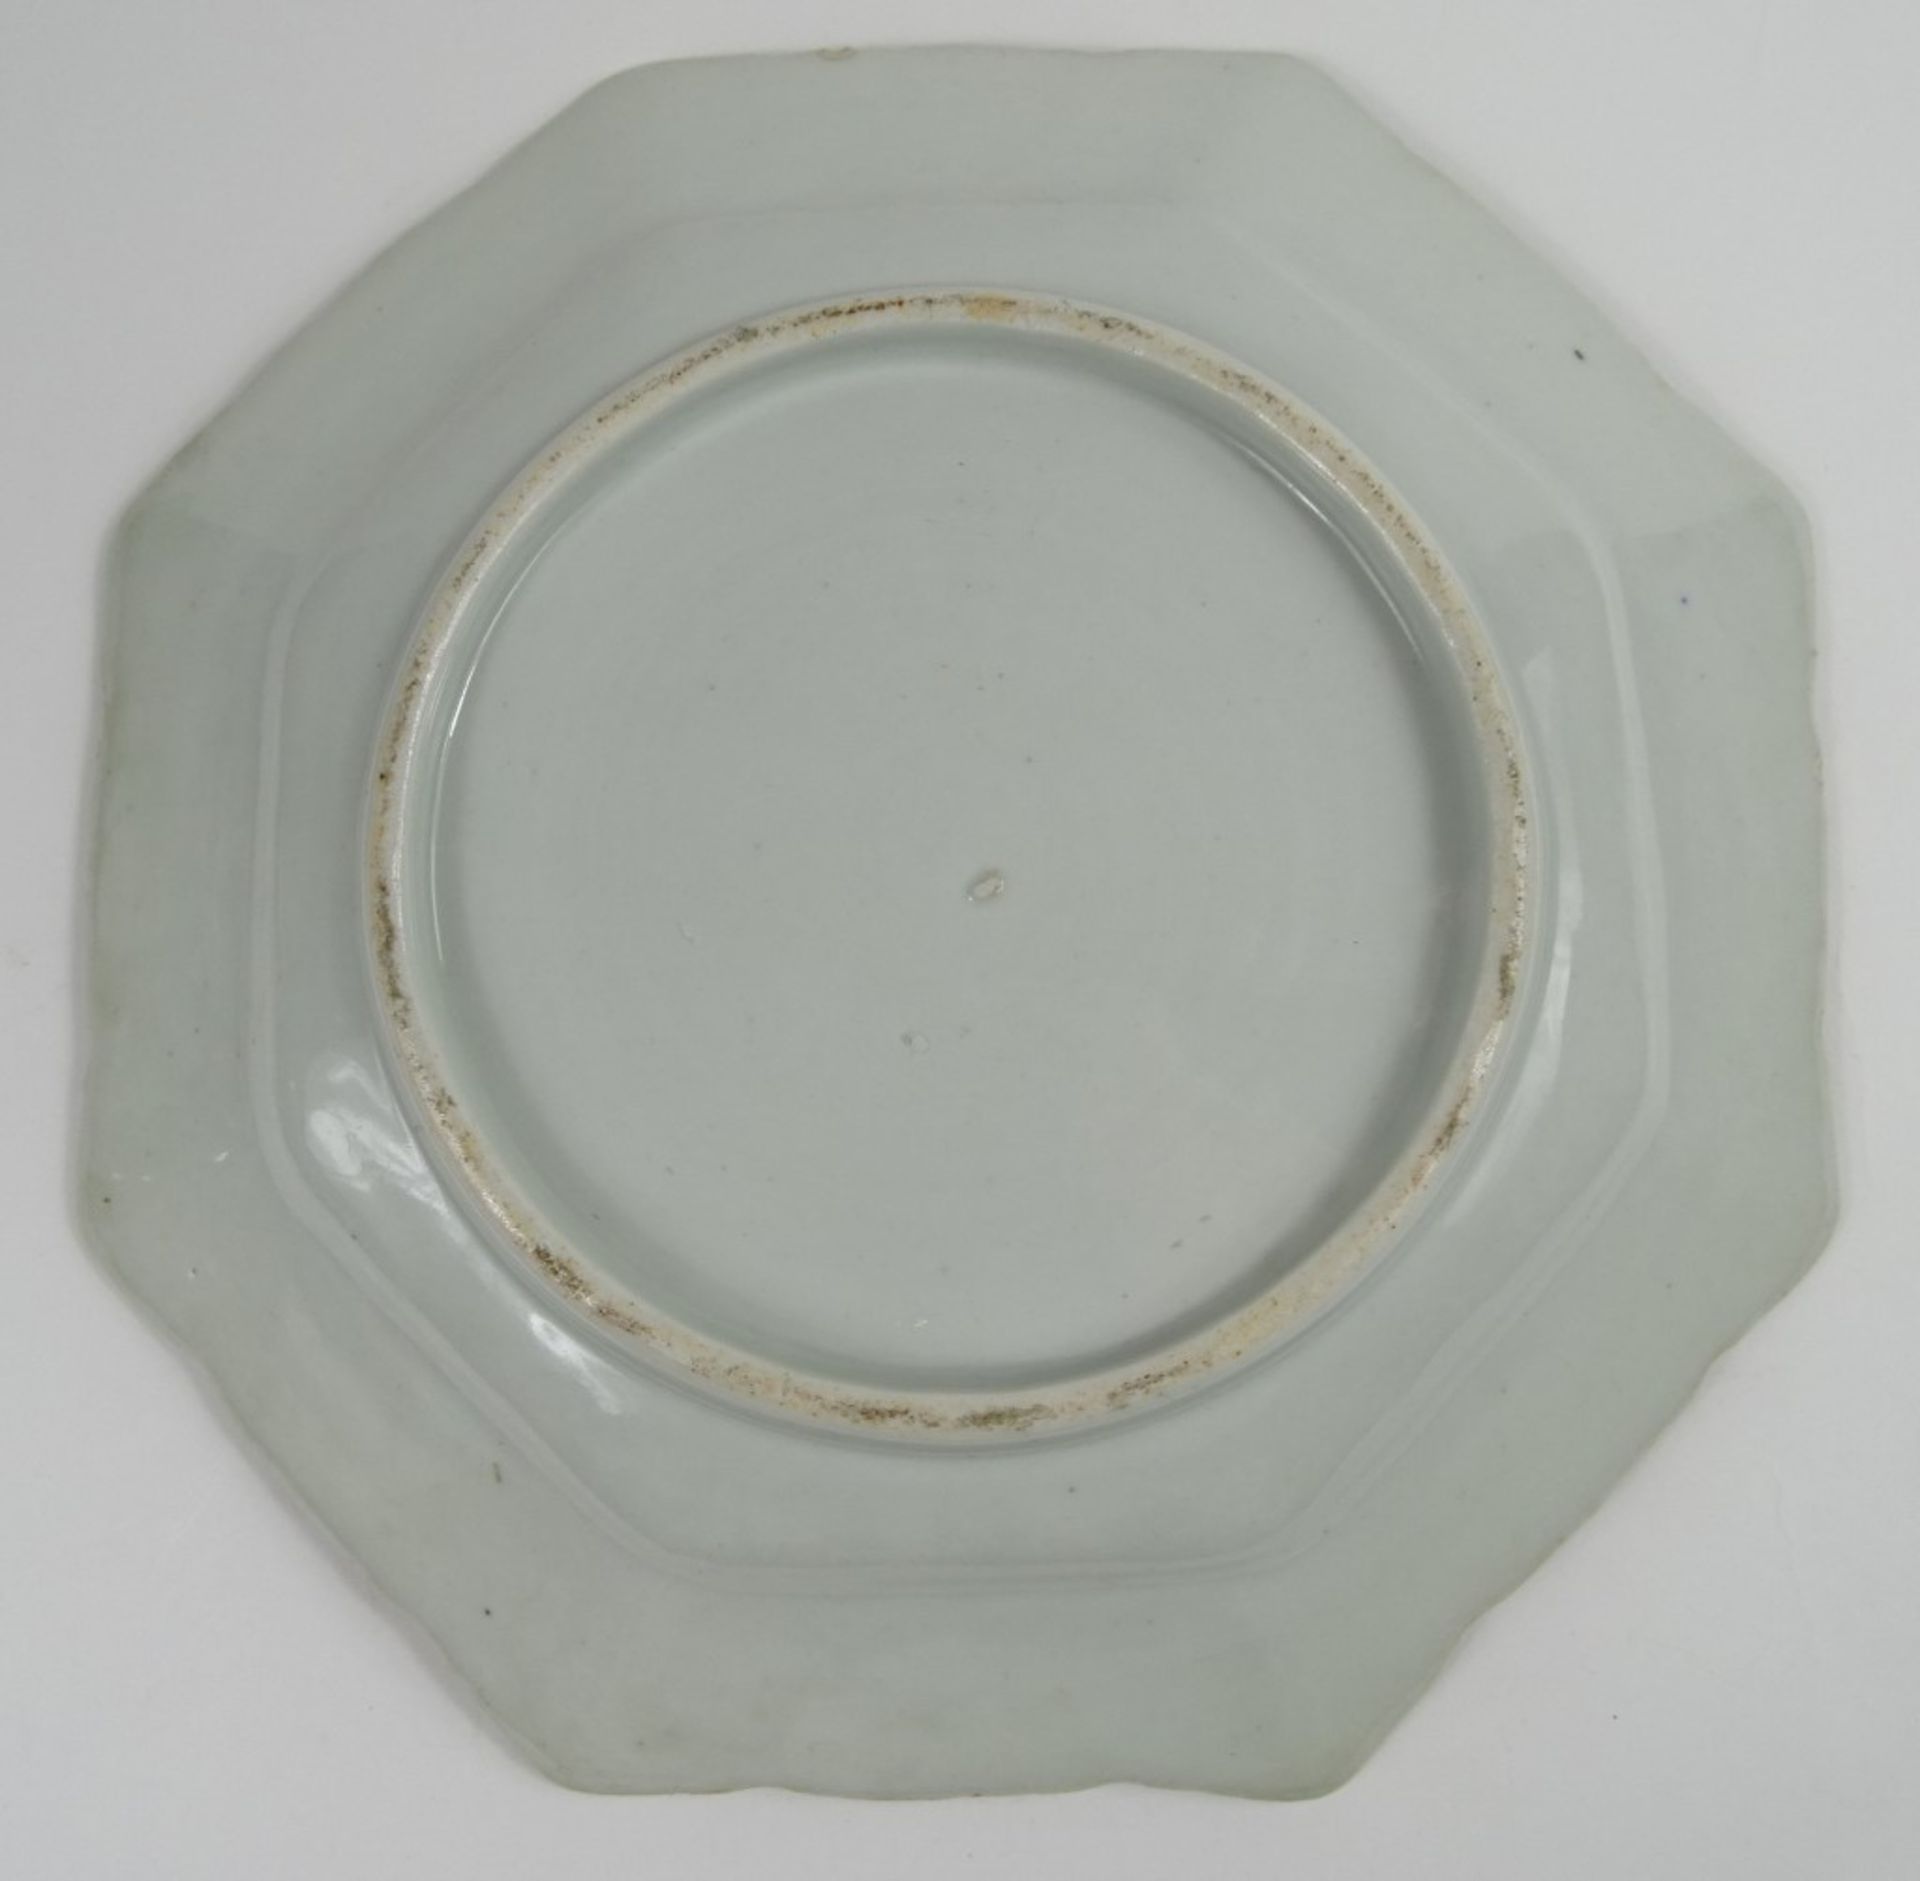 Teller, China, handbemalt, D-31,5 cm, kleine Kratzer vorhanden und Farbe stellenweise abgeplatzt - Bild 4 aus 4